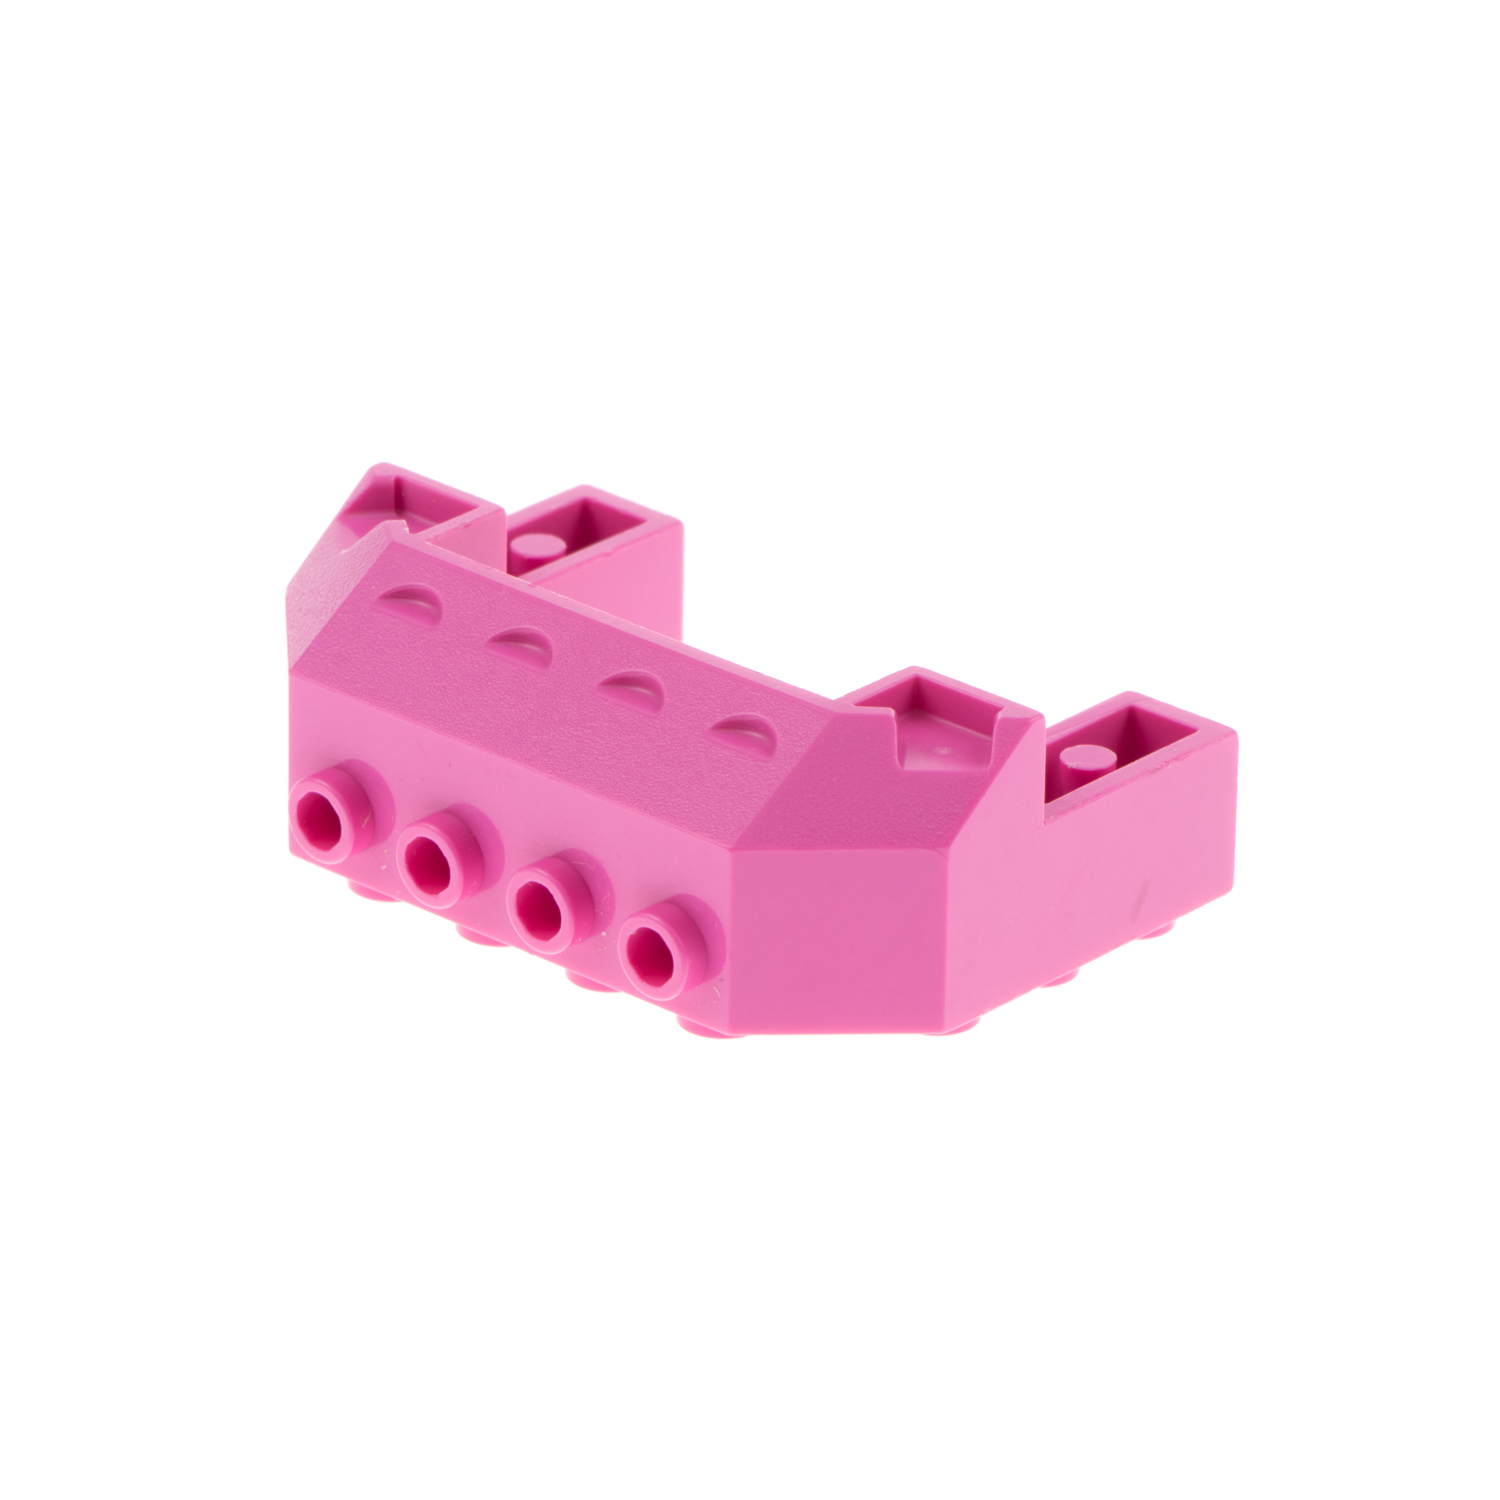 1x Lego Eisenbahn Front 4x6 dunkel pink Schräg Stein 6056386 87619